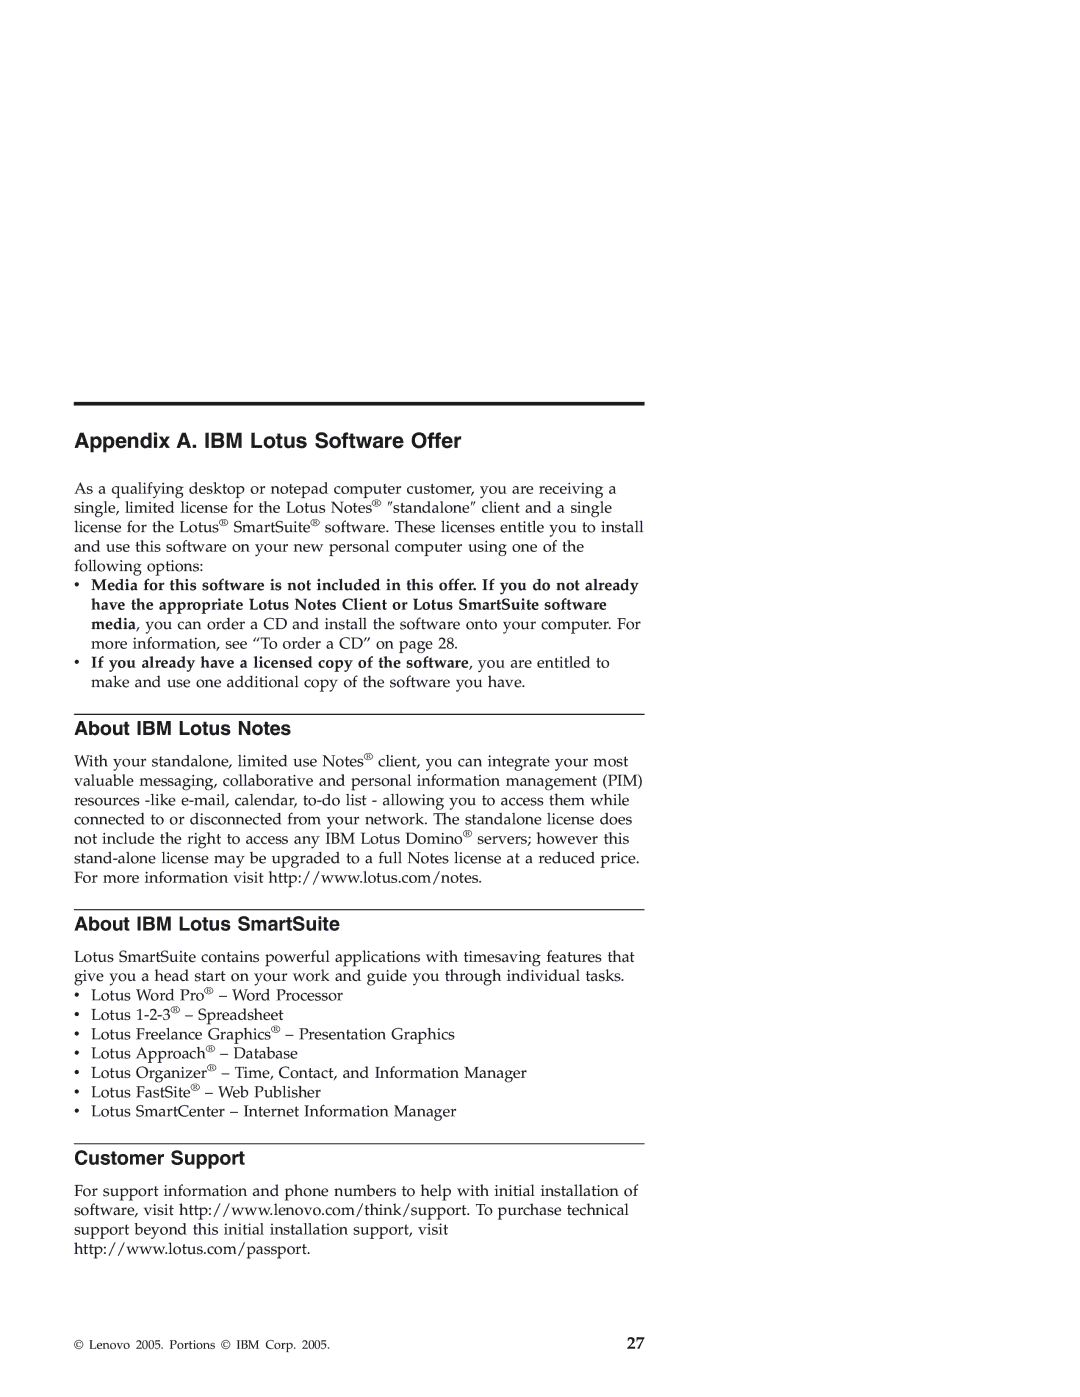 Lenovo 3000 J Appendix A. IBM Lotus Software Offer, About IBM Lotus Notes About IBM Lotus SmartSuite, Customer Support 